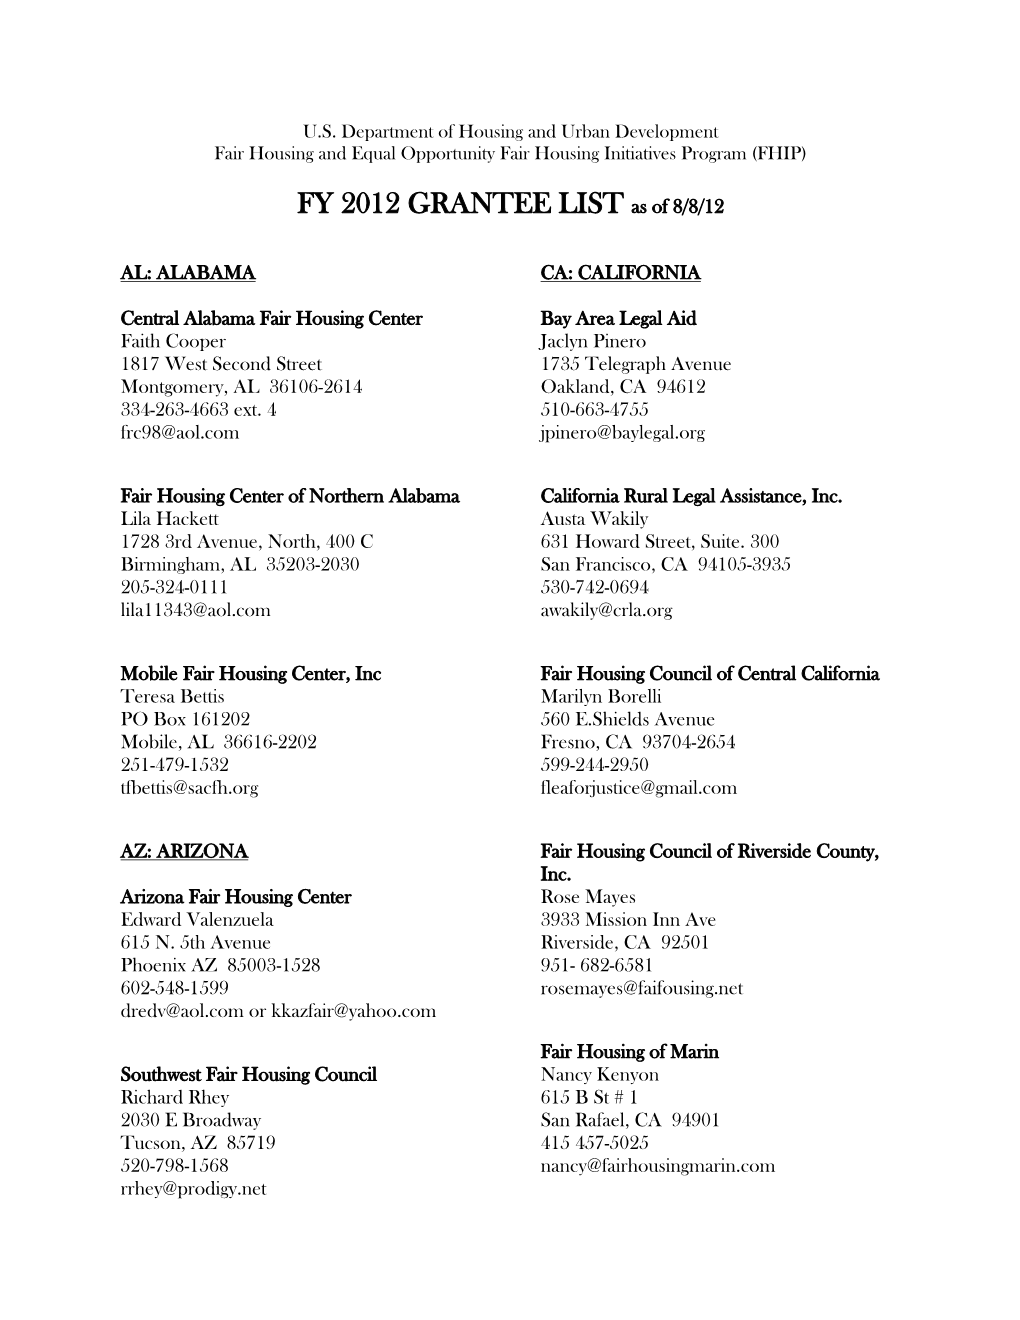 FY 2012 GRANTEE LIST As of 8/8/12